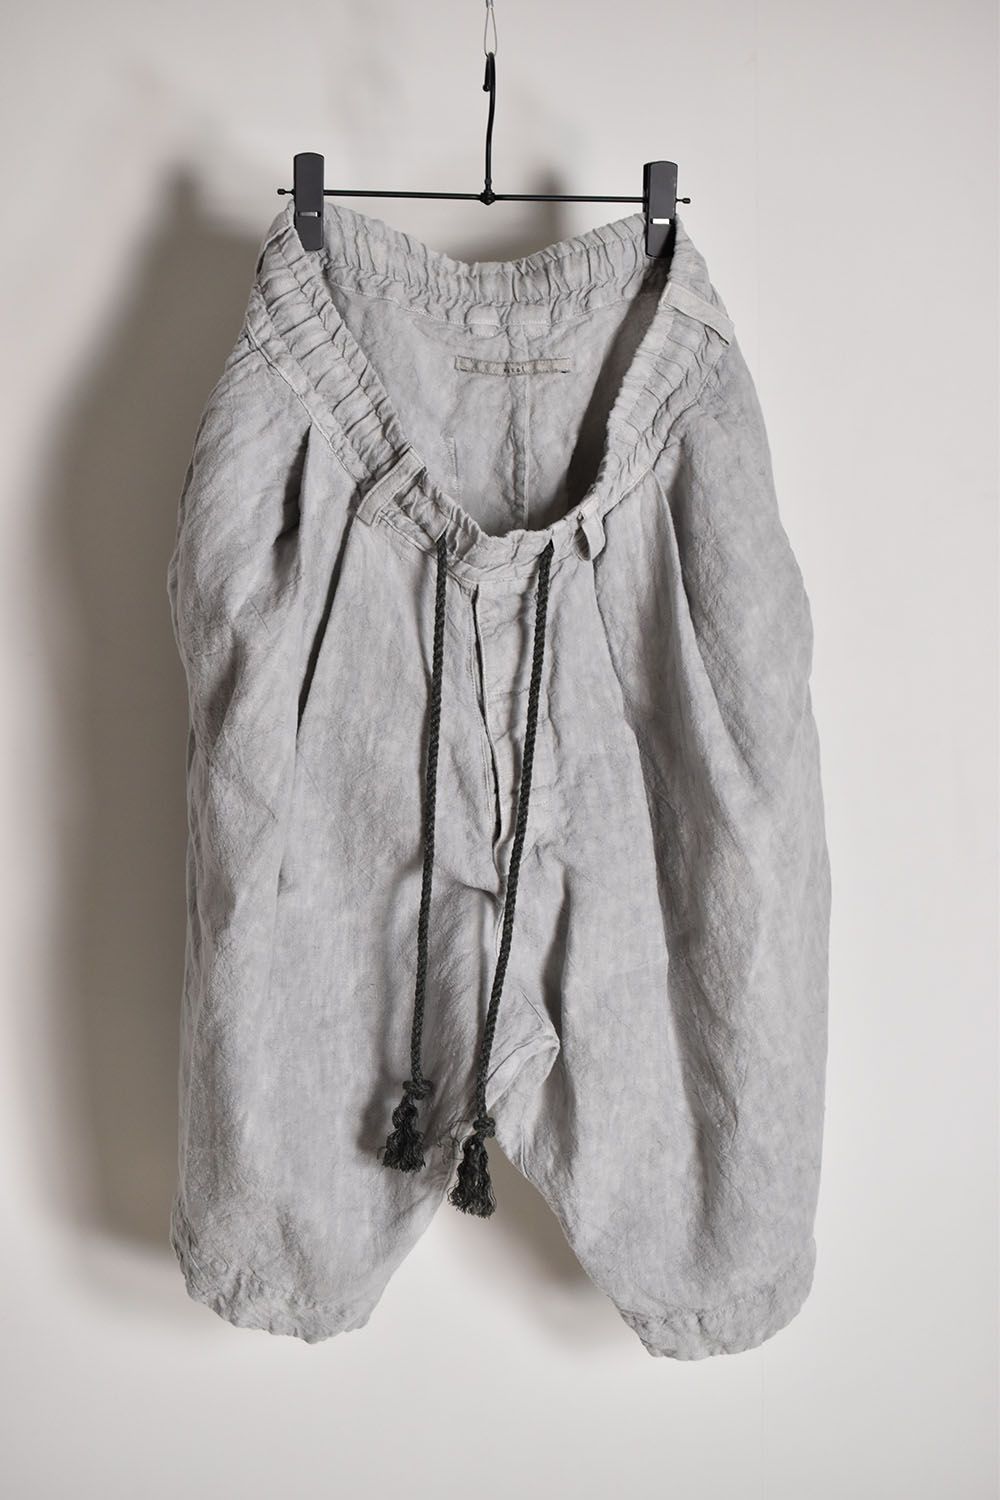 Sumi Dyed Tuck Shorts"L.Grey"墨染タックショーツ"ライトグレー"